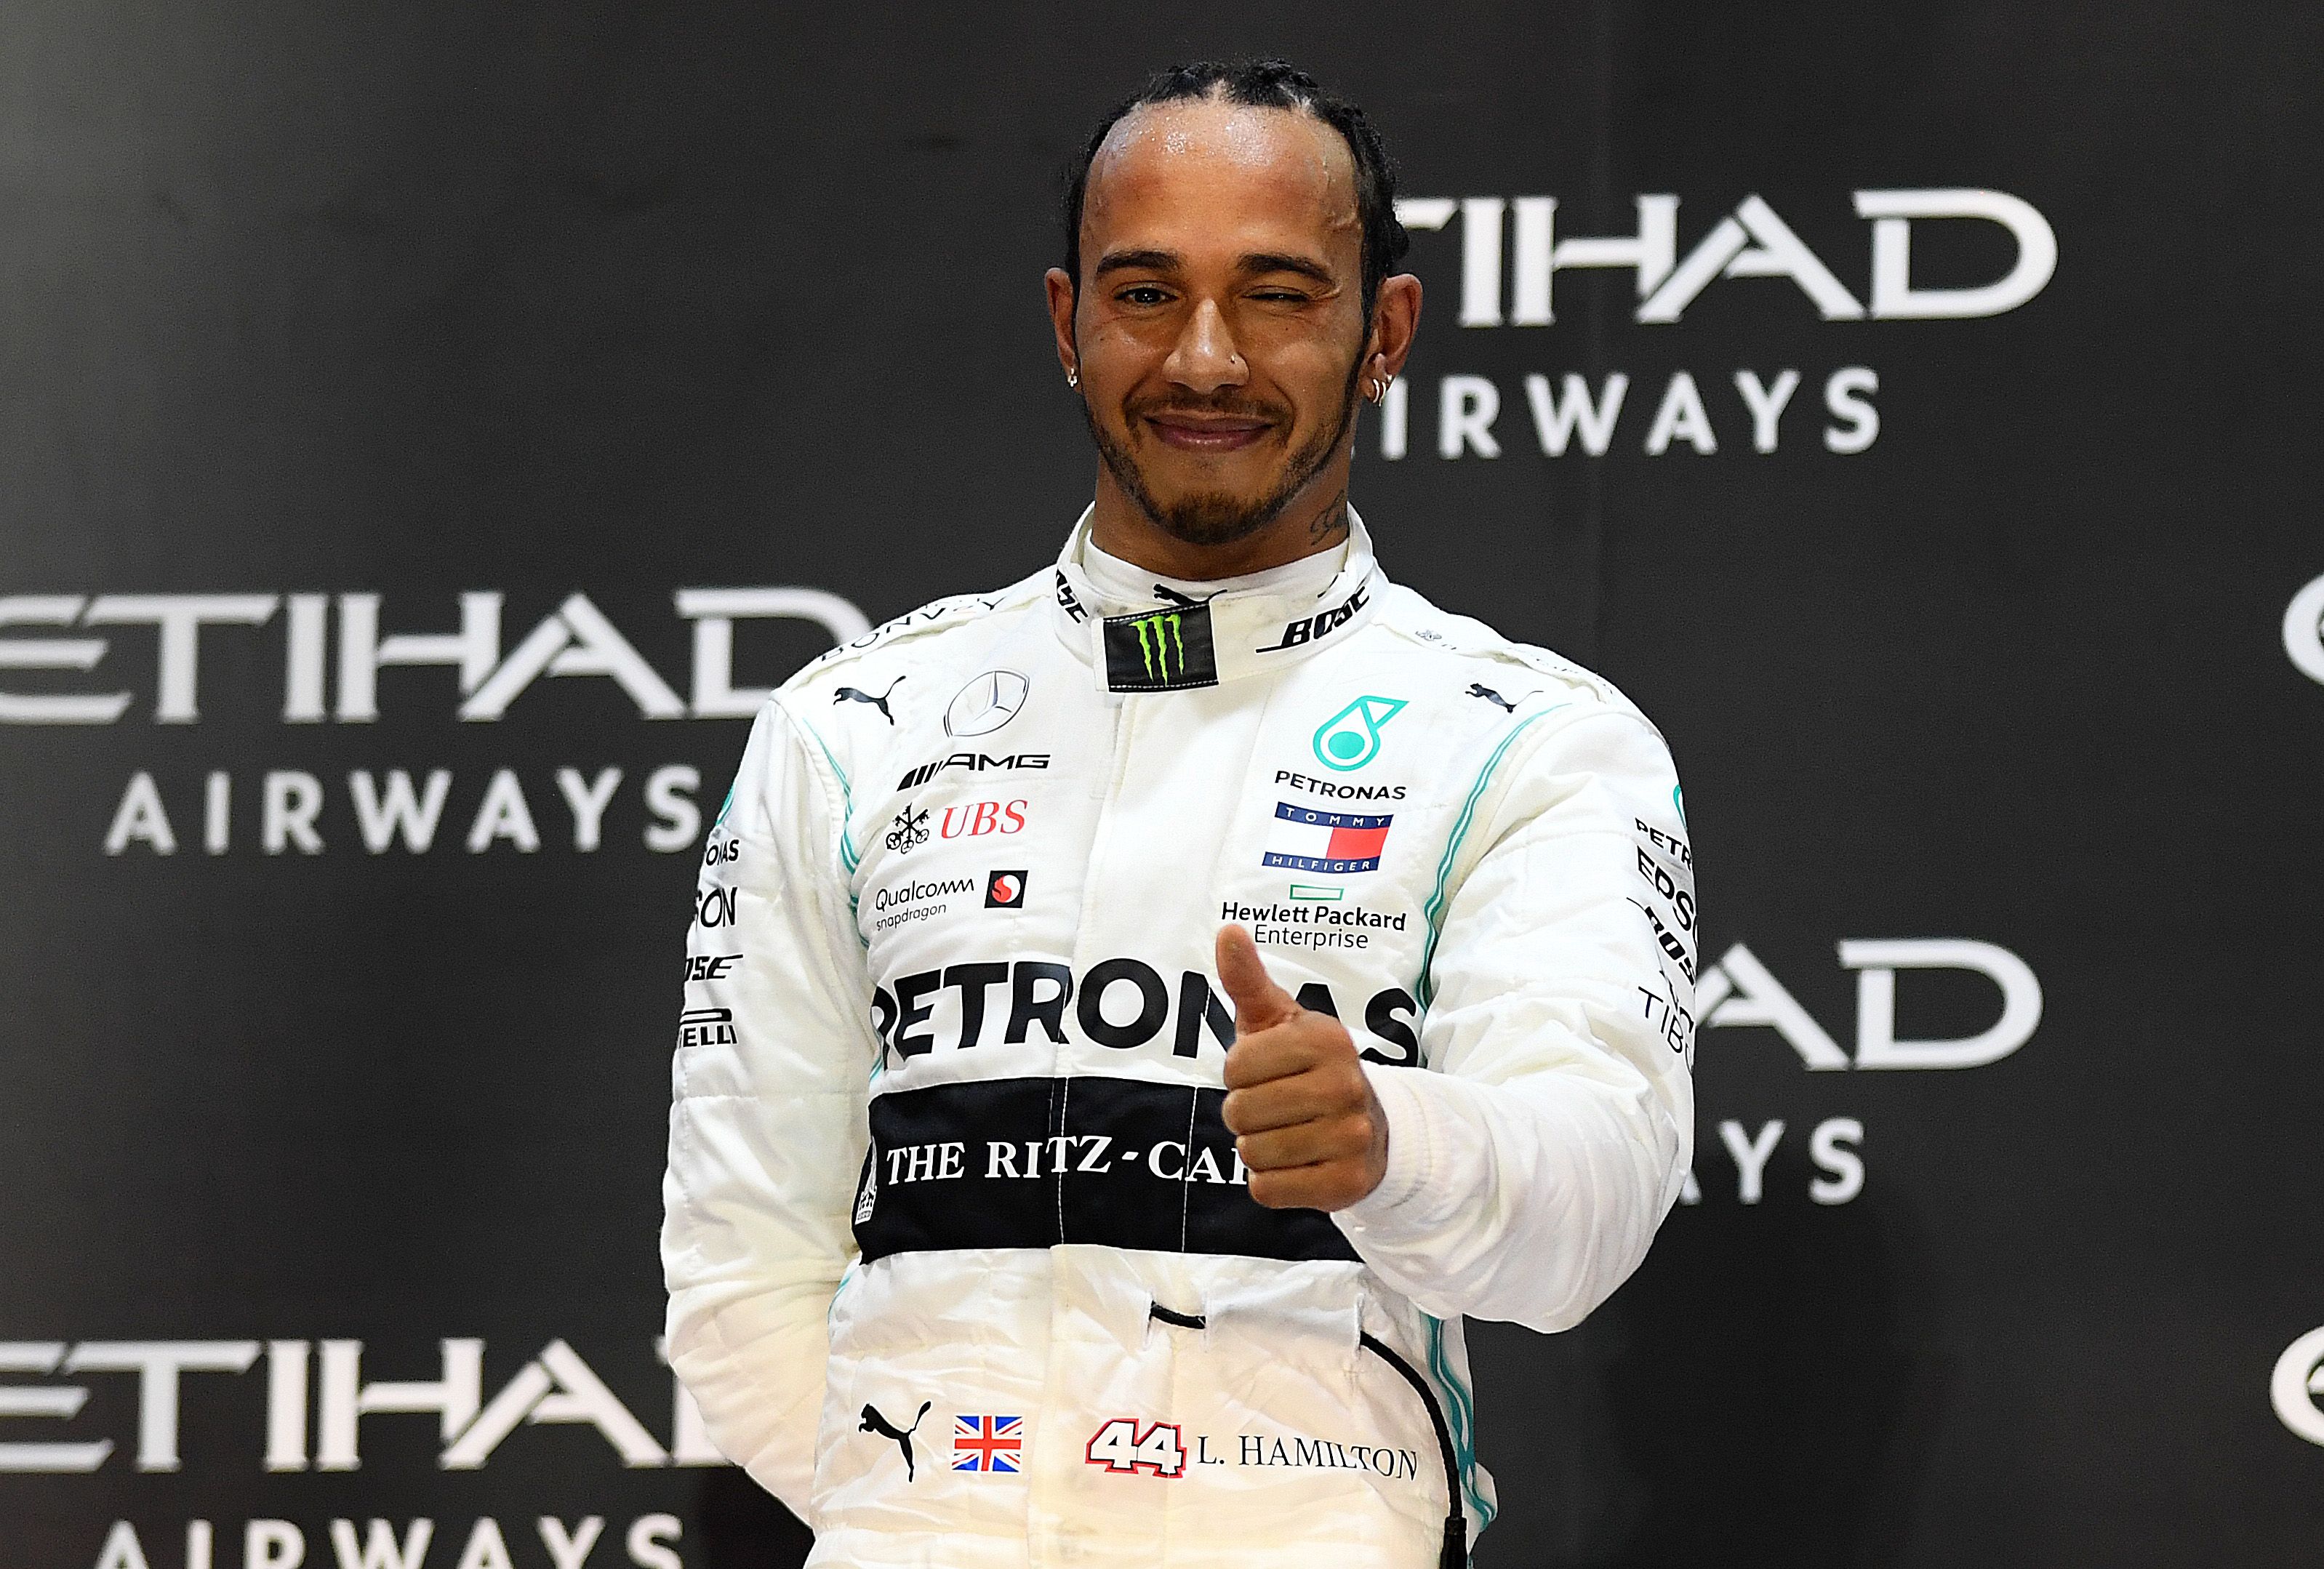 Felszólalásaiért és pályán nyújtott teljesíményeiért igazán megérdemli a lovagi címet Lewis Hamilton  Fotó: GettyImages